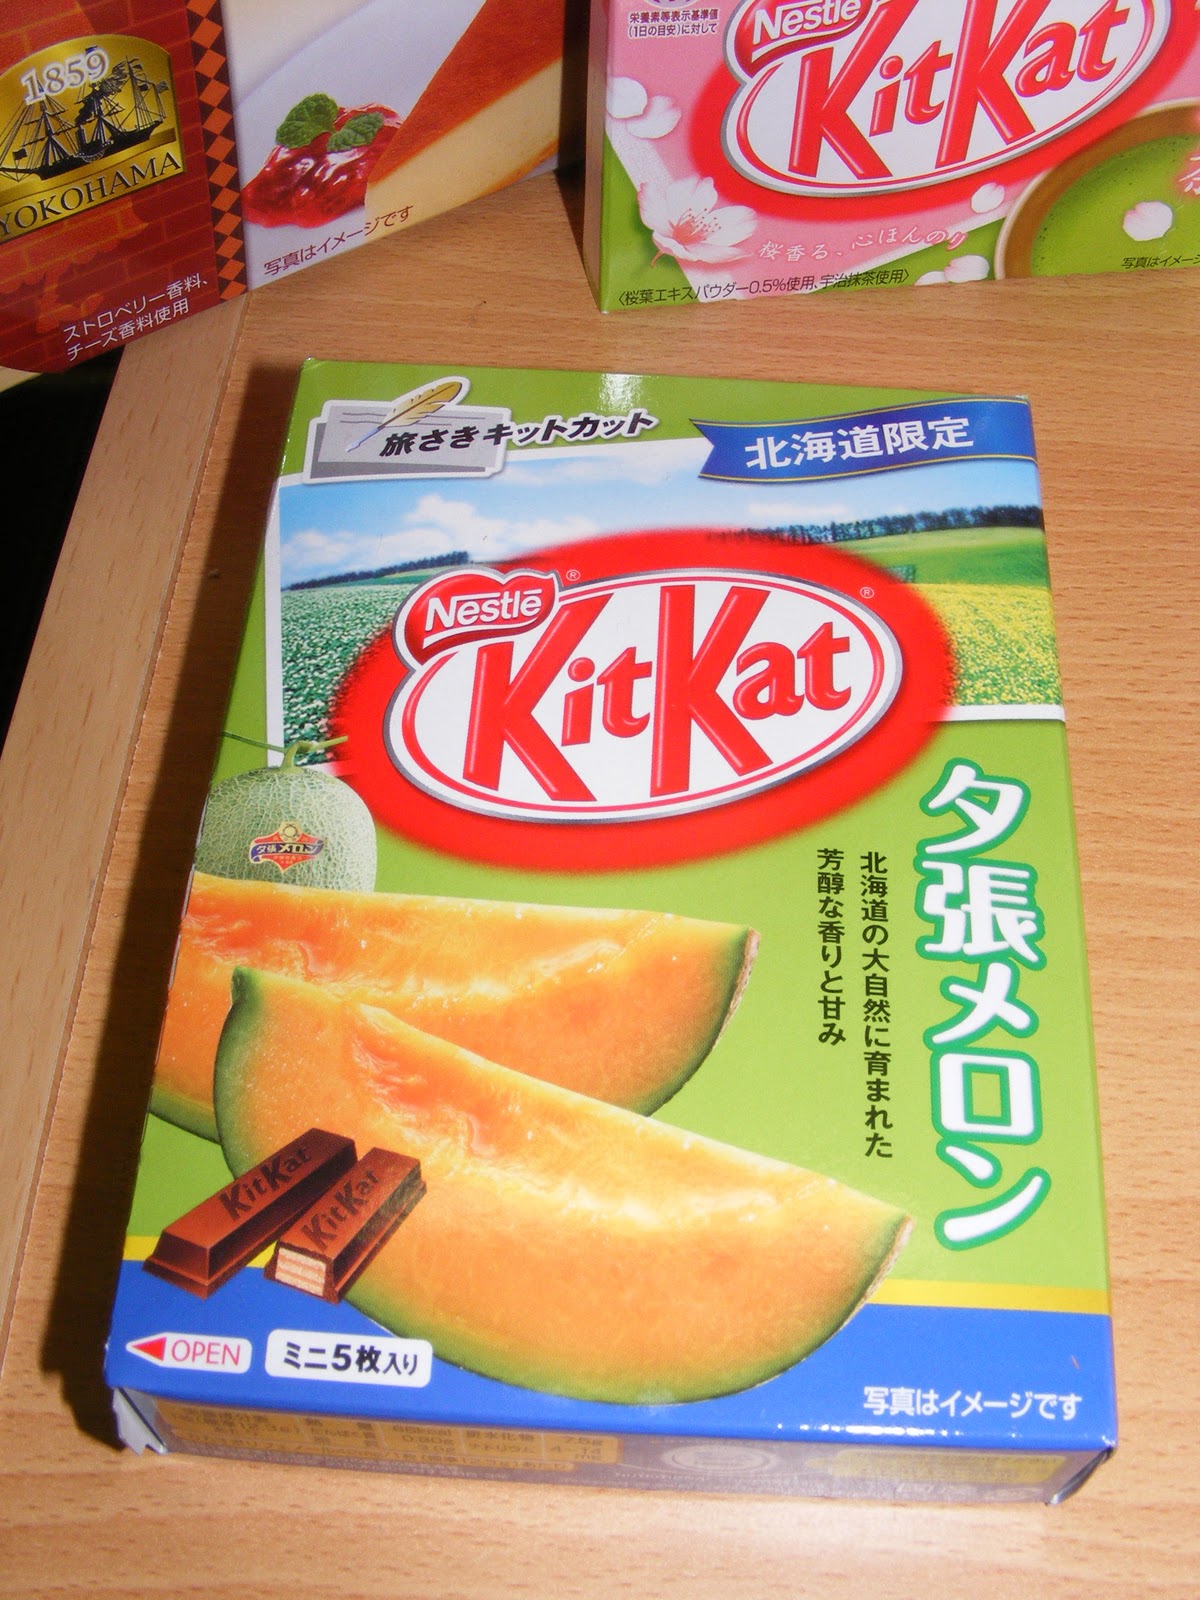 Người Nhật rất thích dưa lưới nên việc có Kit Kat phiên bản dưa lưới chẳng có gì ngạc nhiên.